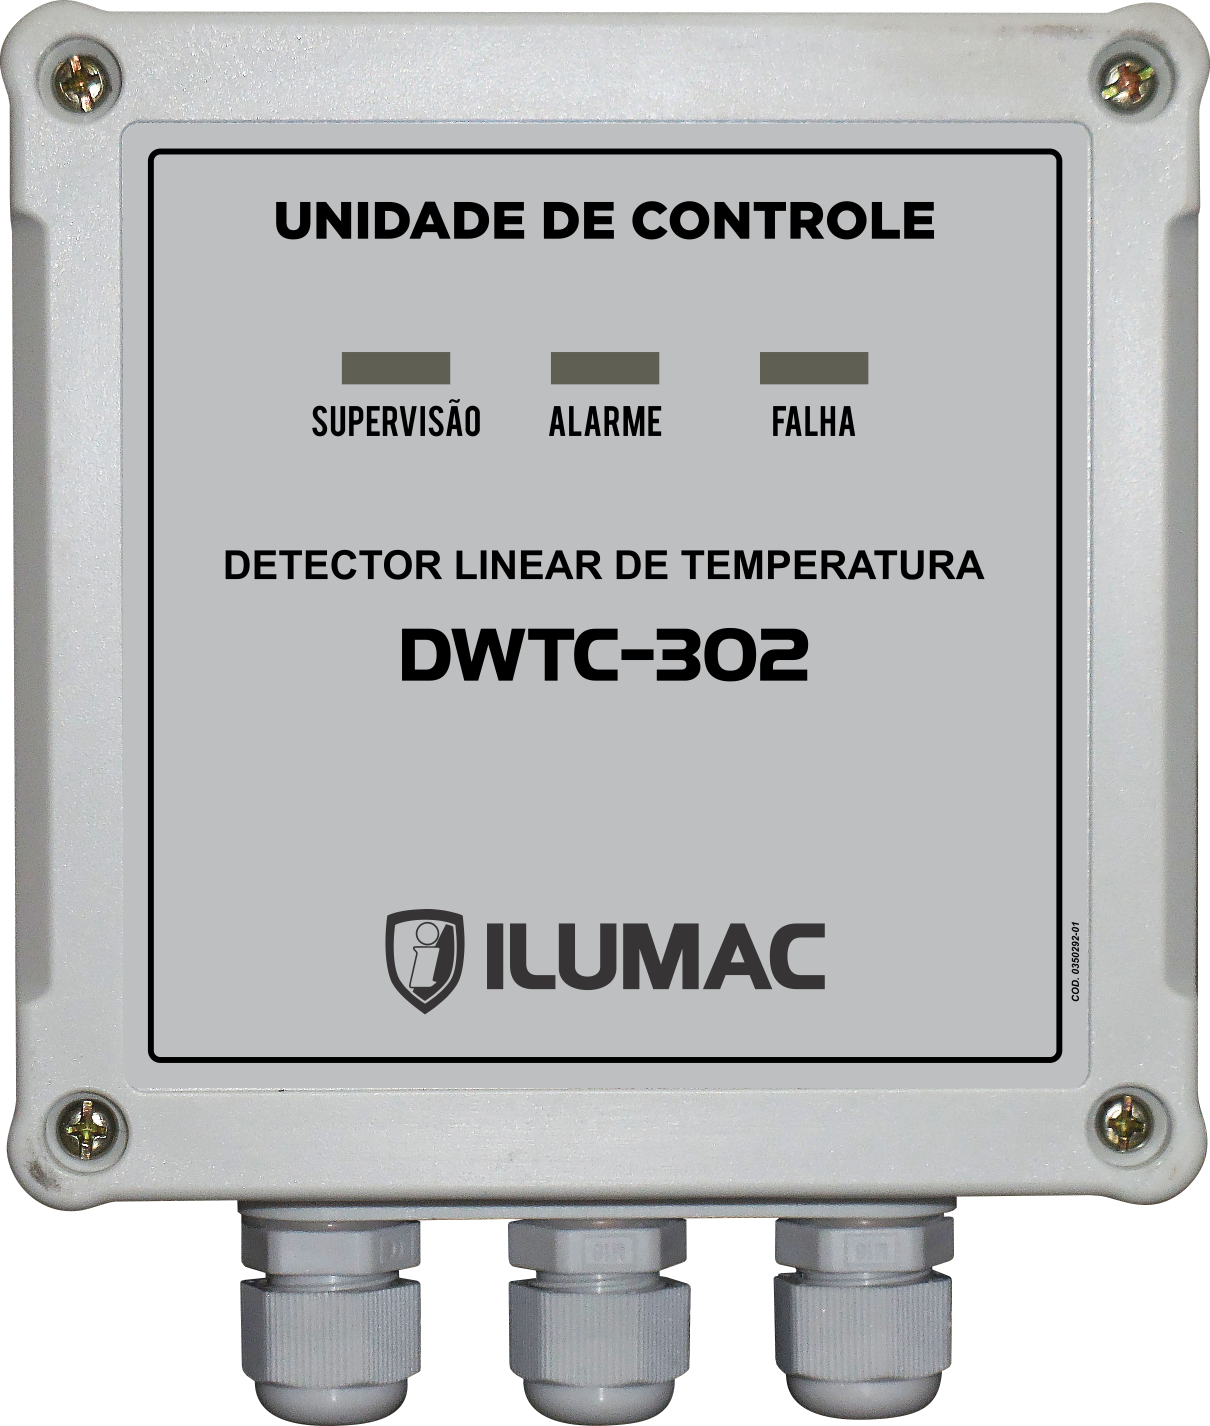 Detector Linear de Temperatura <br>DWTC-302